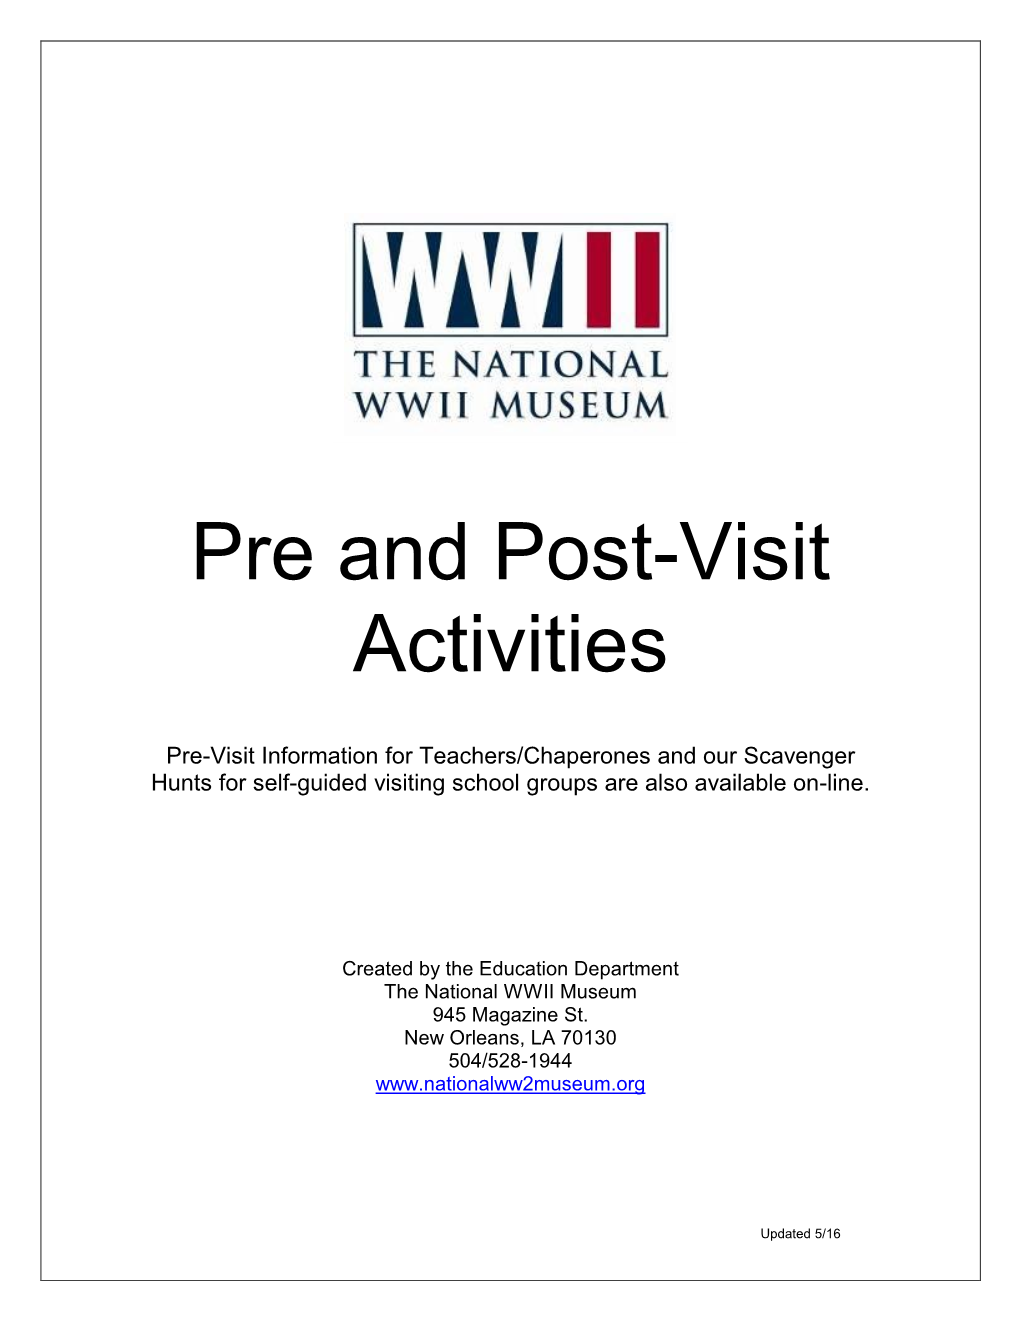 Pre-Visit Activities 3